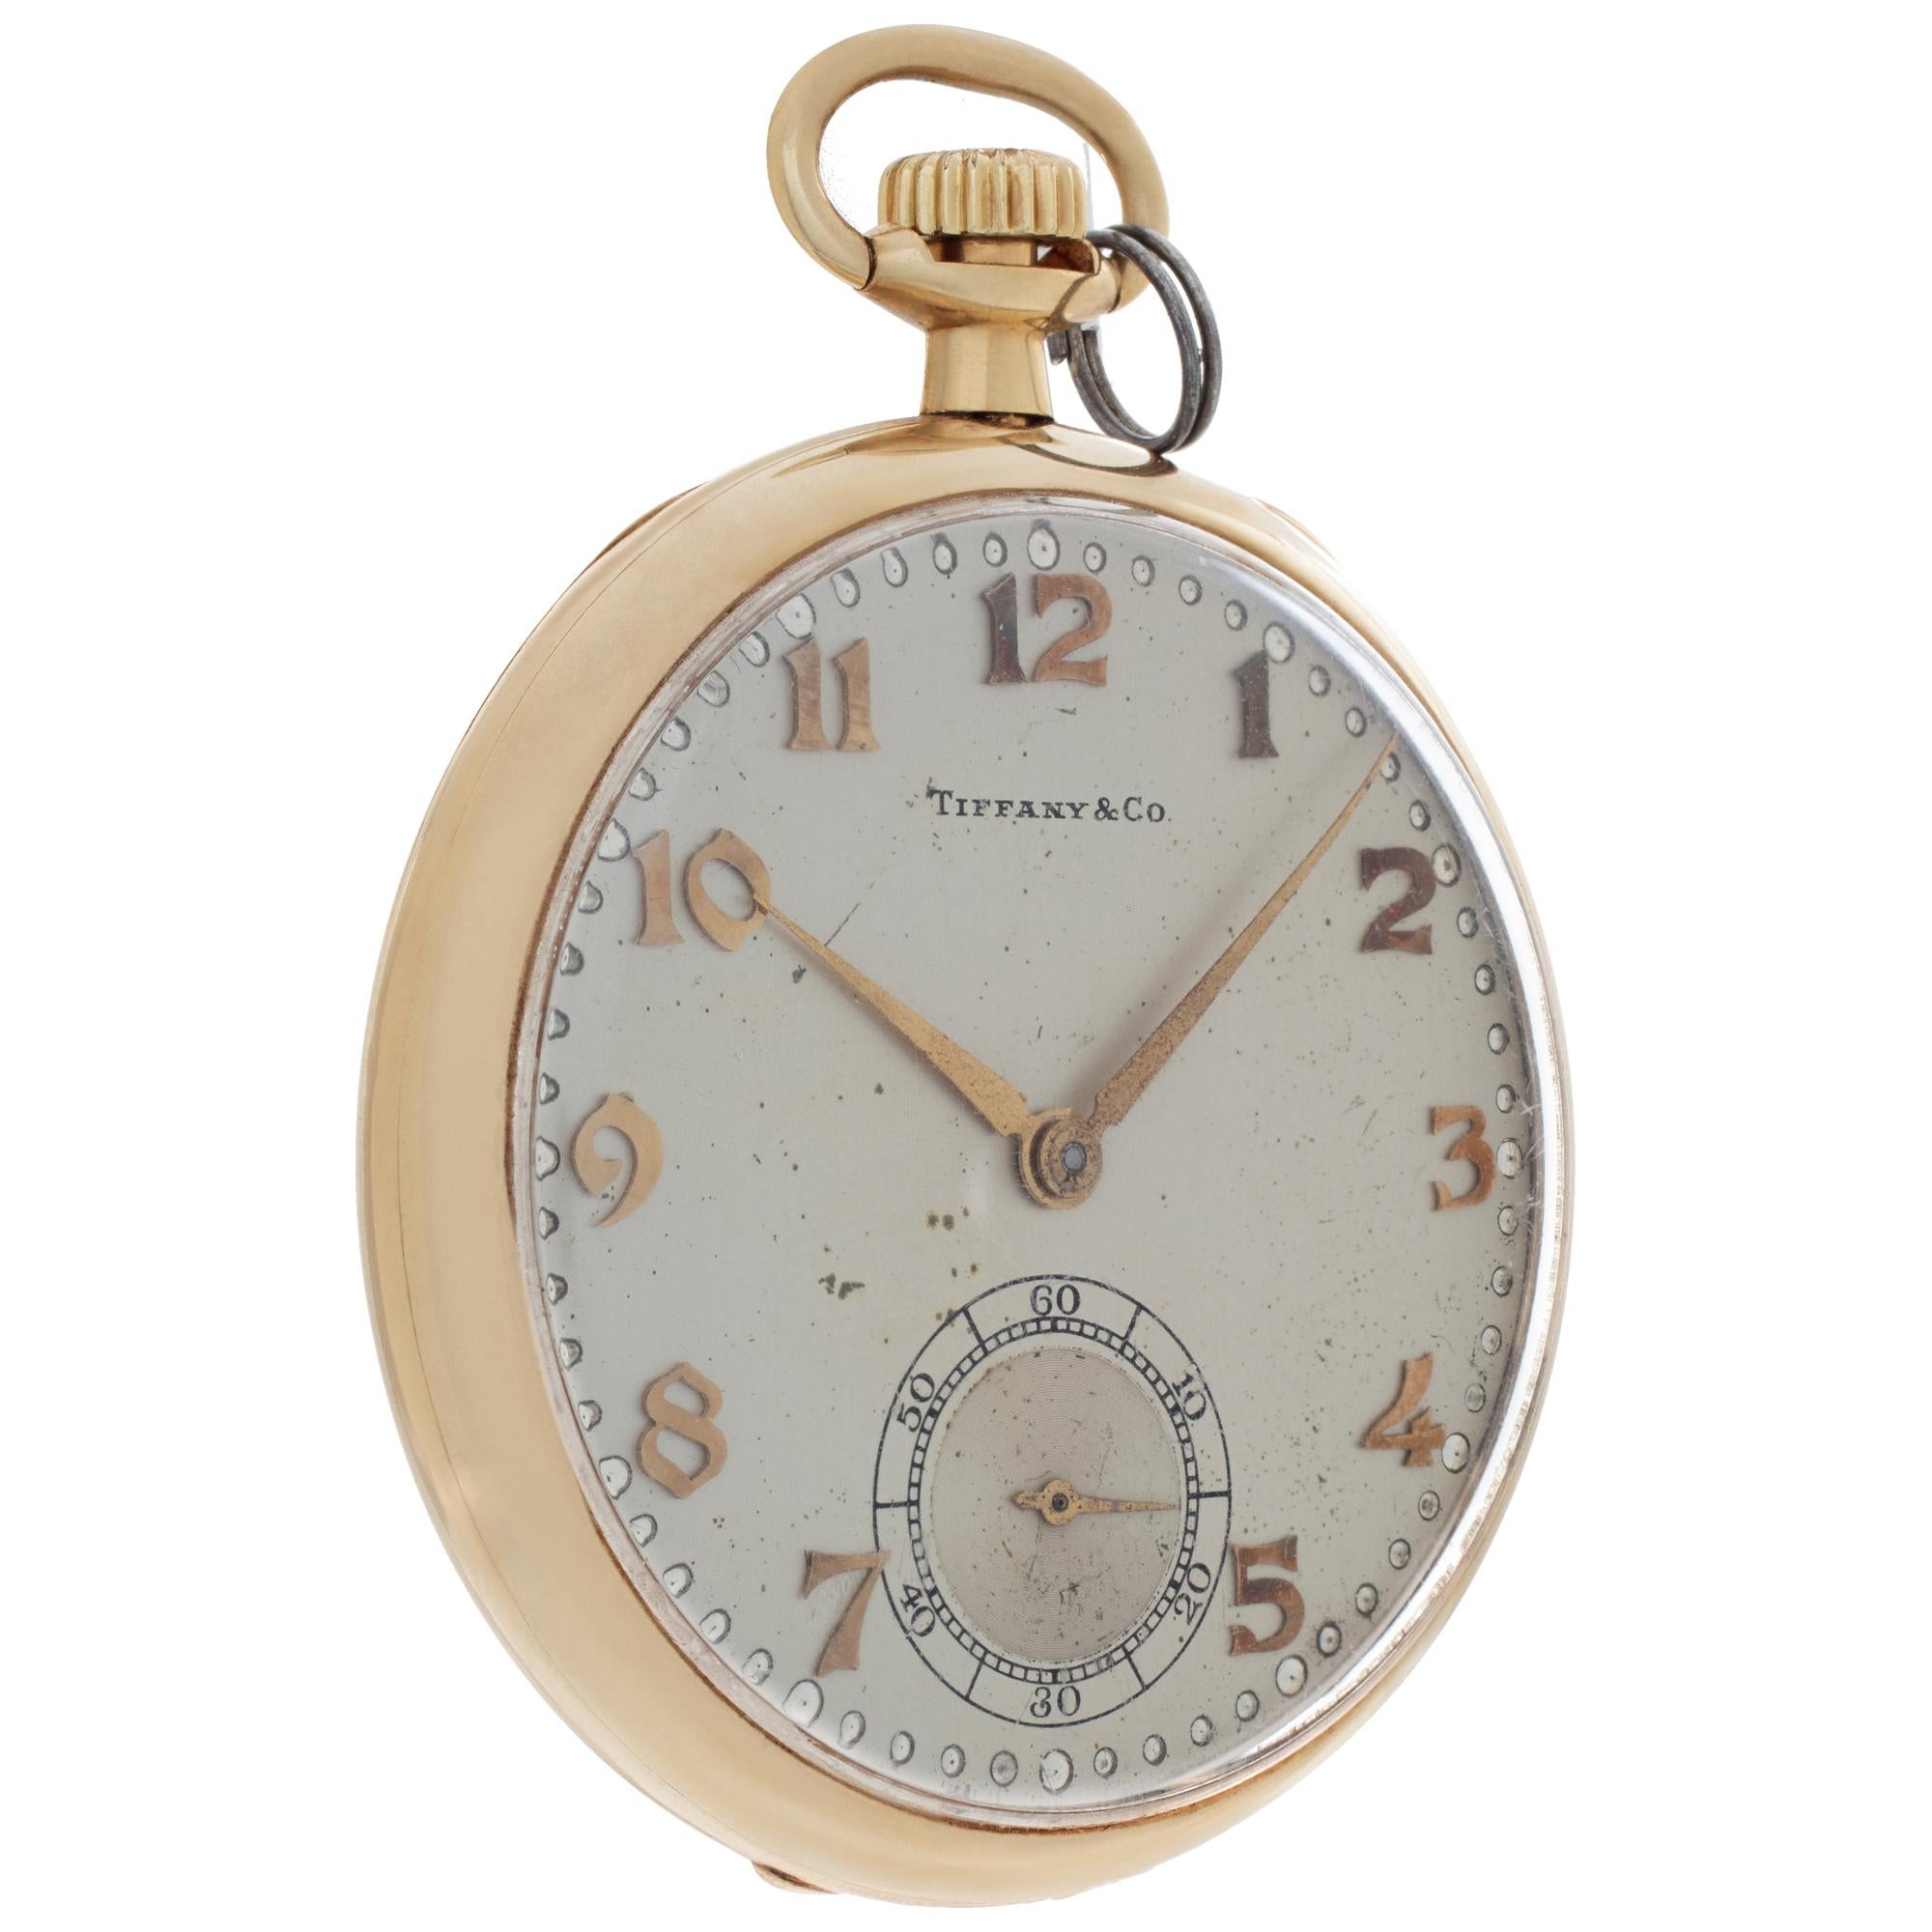 tiffany pocket watch 1837